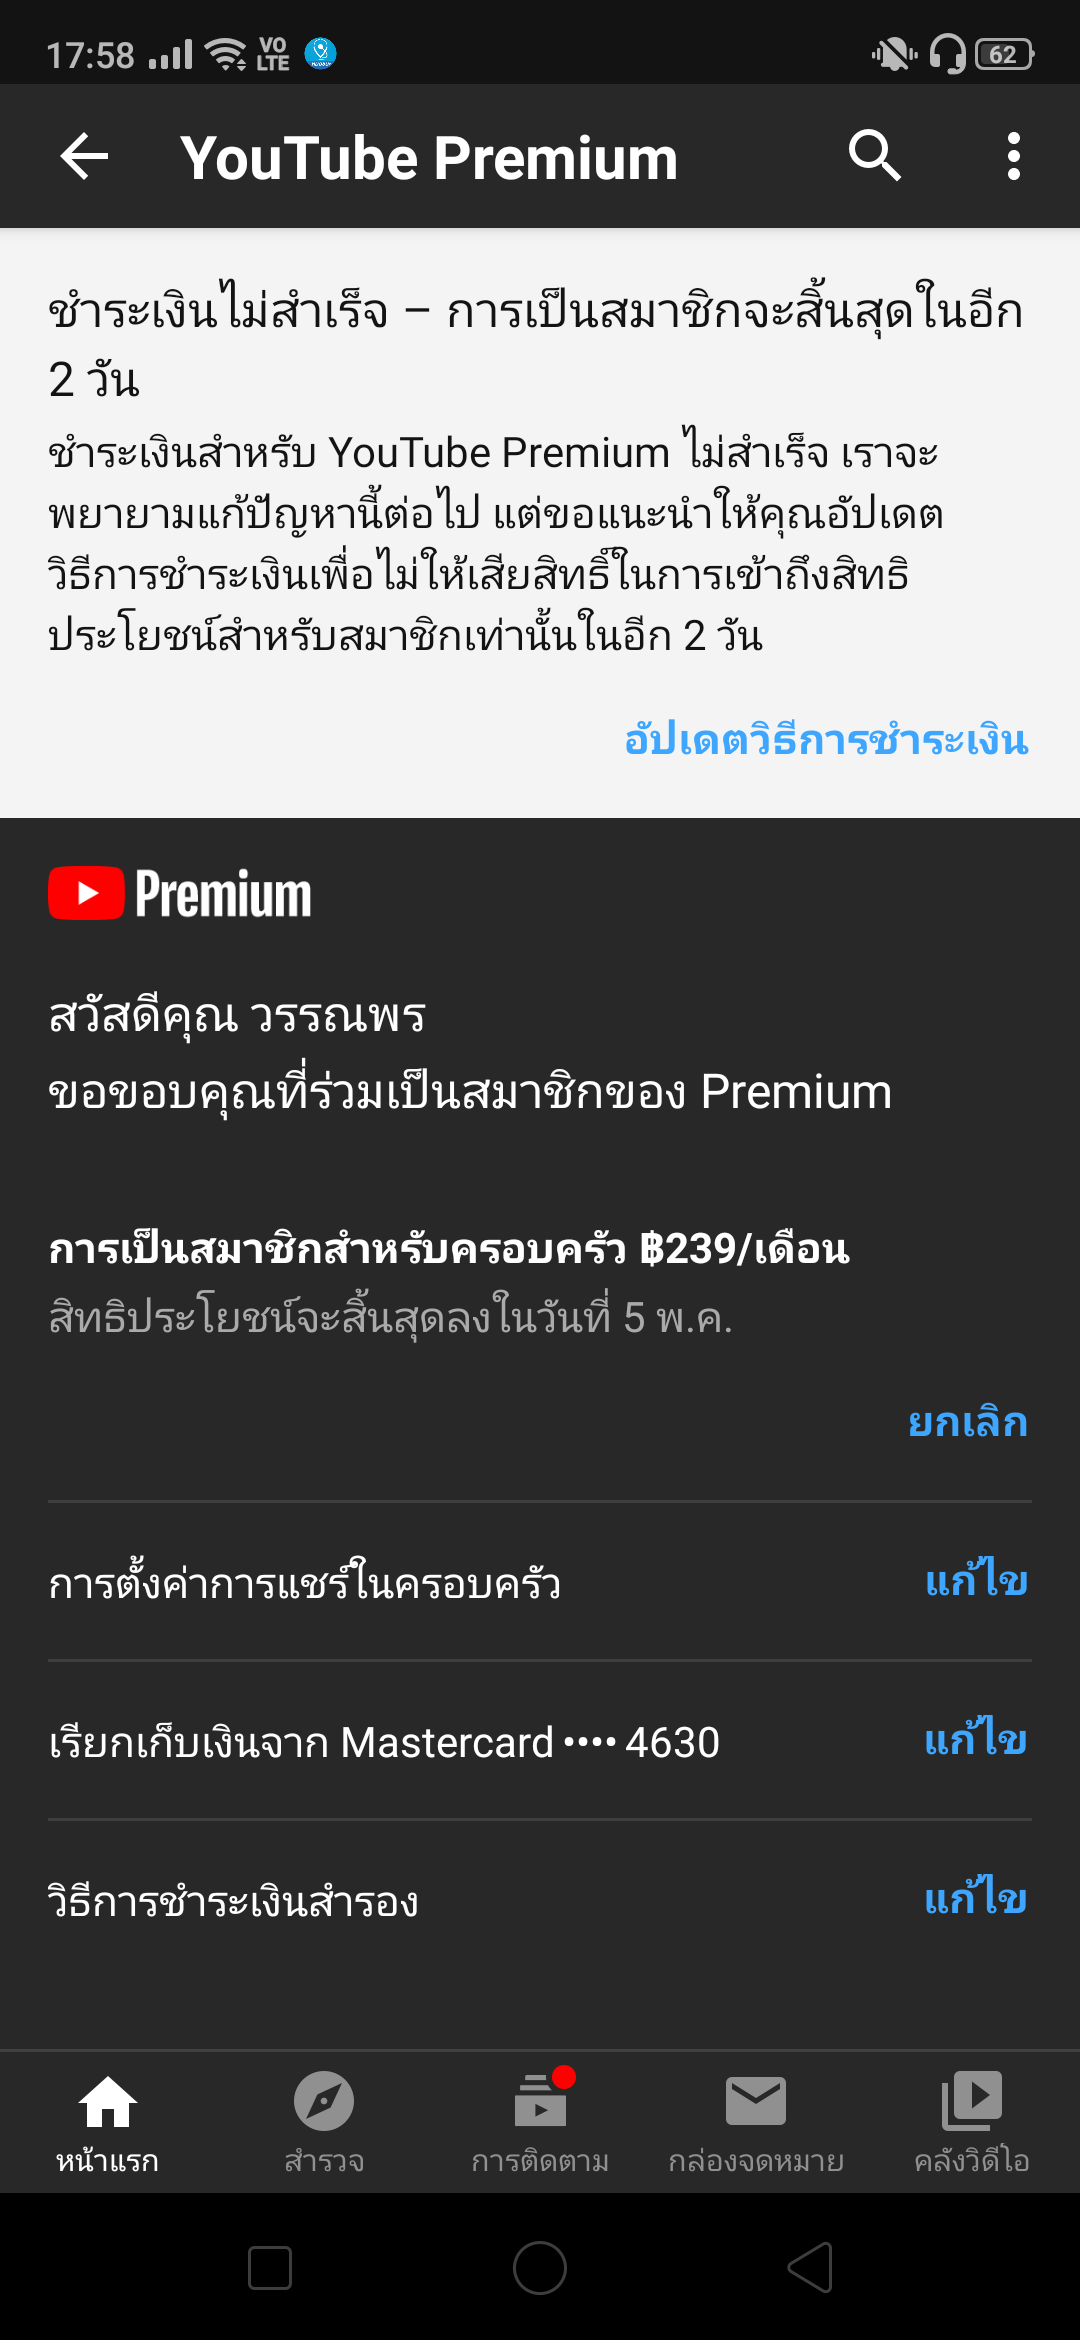 จ่ายเงิน Youtube Premium ไม่ได้ทำไงดีคะ - Pantip